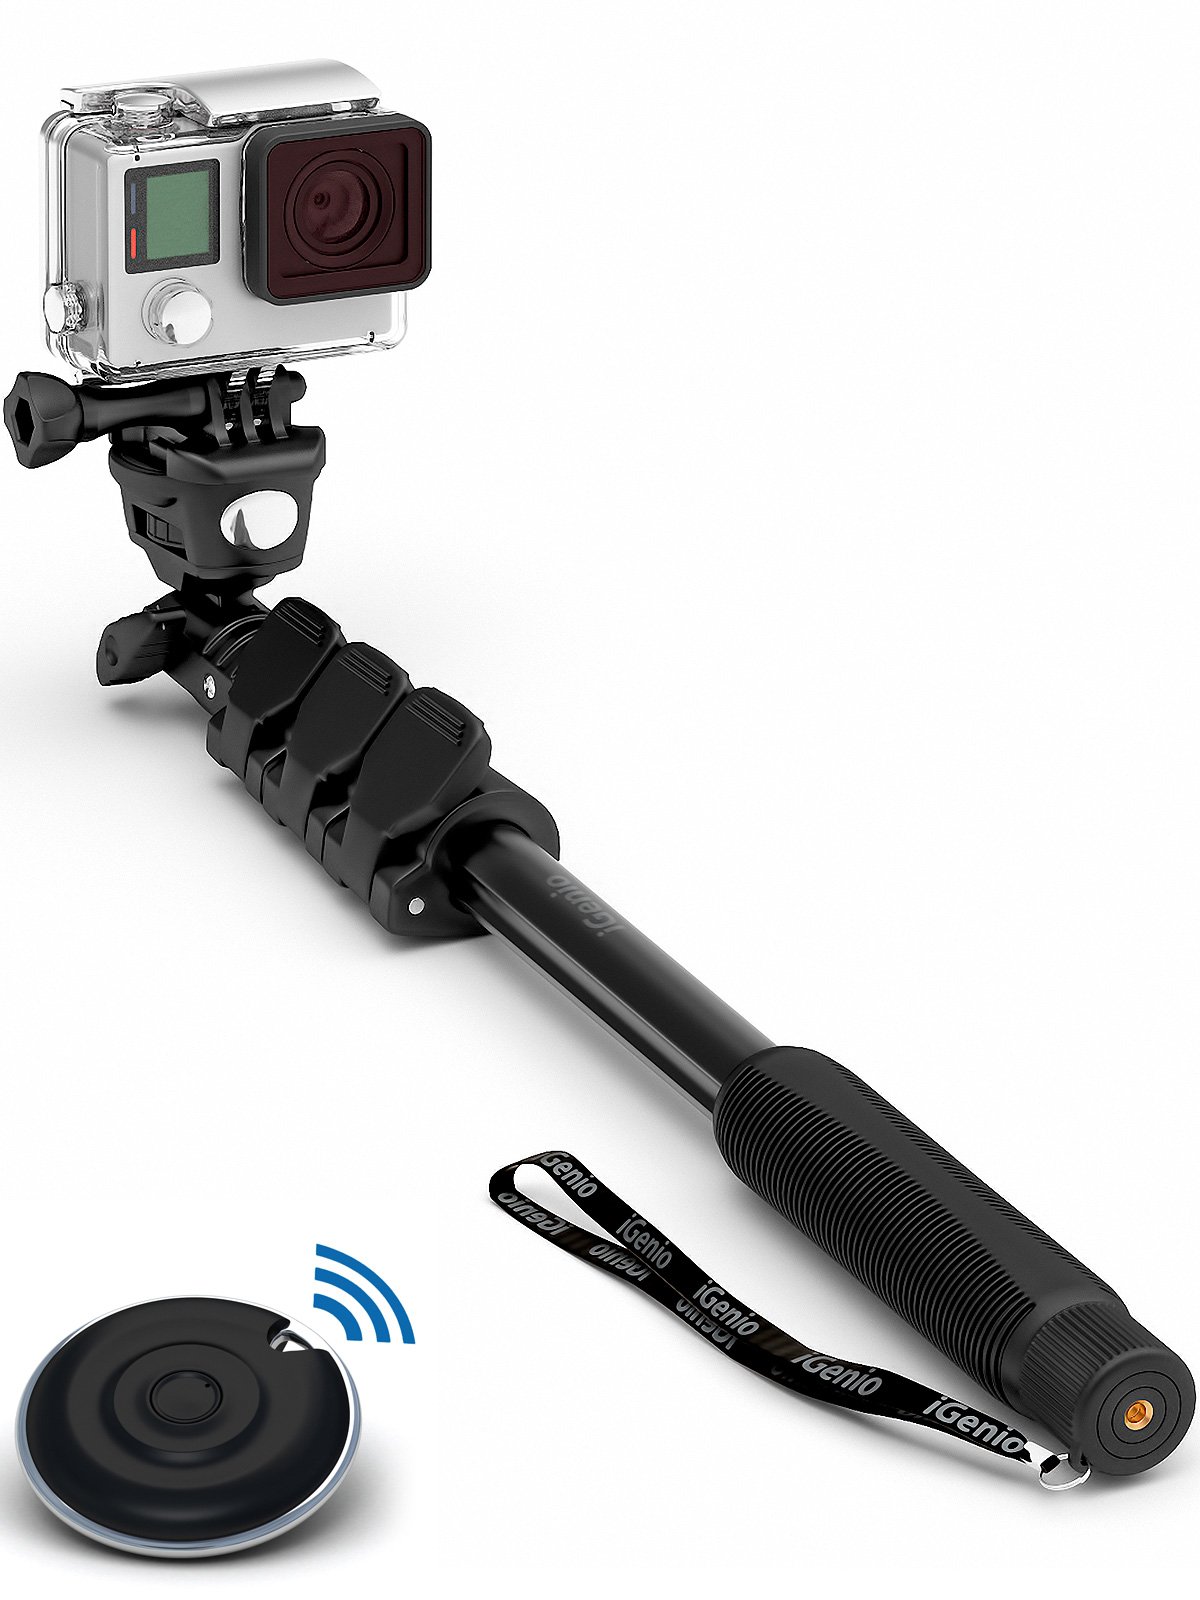 Giá đỡ máy quay và điều khiển Professional 10-In-1 Monopod / Selfie Stick For GoPro Hero, iPhone, Samsung Galaxy, Digital Cameras  (Cellphones Only)